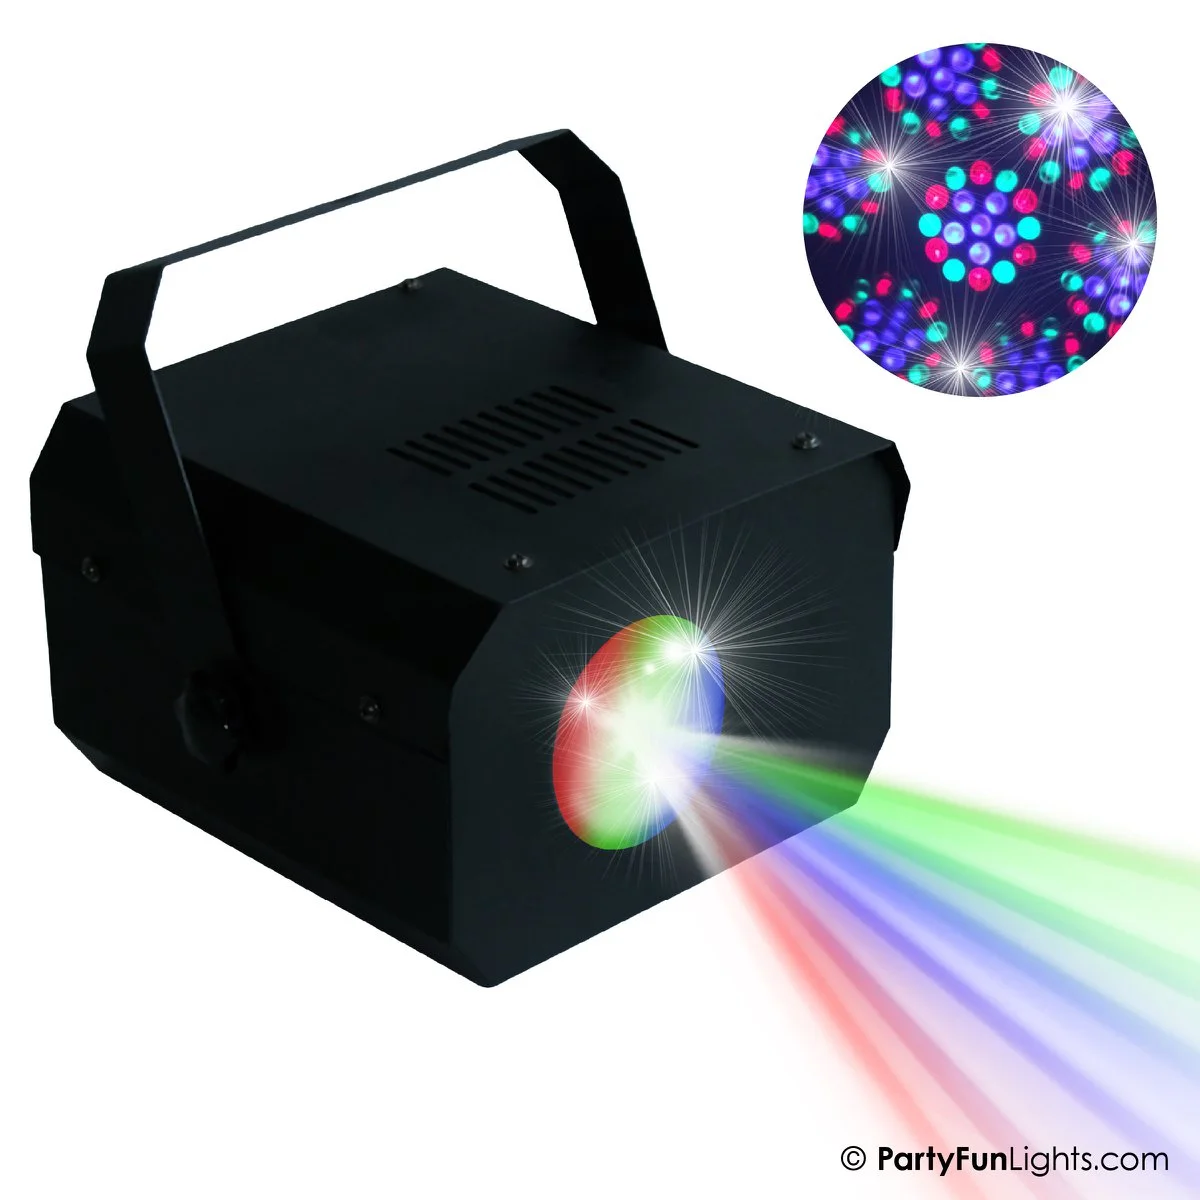 PartyFunLights - Mohnblumen Projektor Discolampe -  musikaktiv und geschwindigkeitsgesteuert -  mehrfarbige LEDs - inkl. Adapter